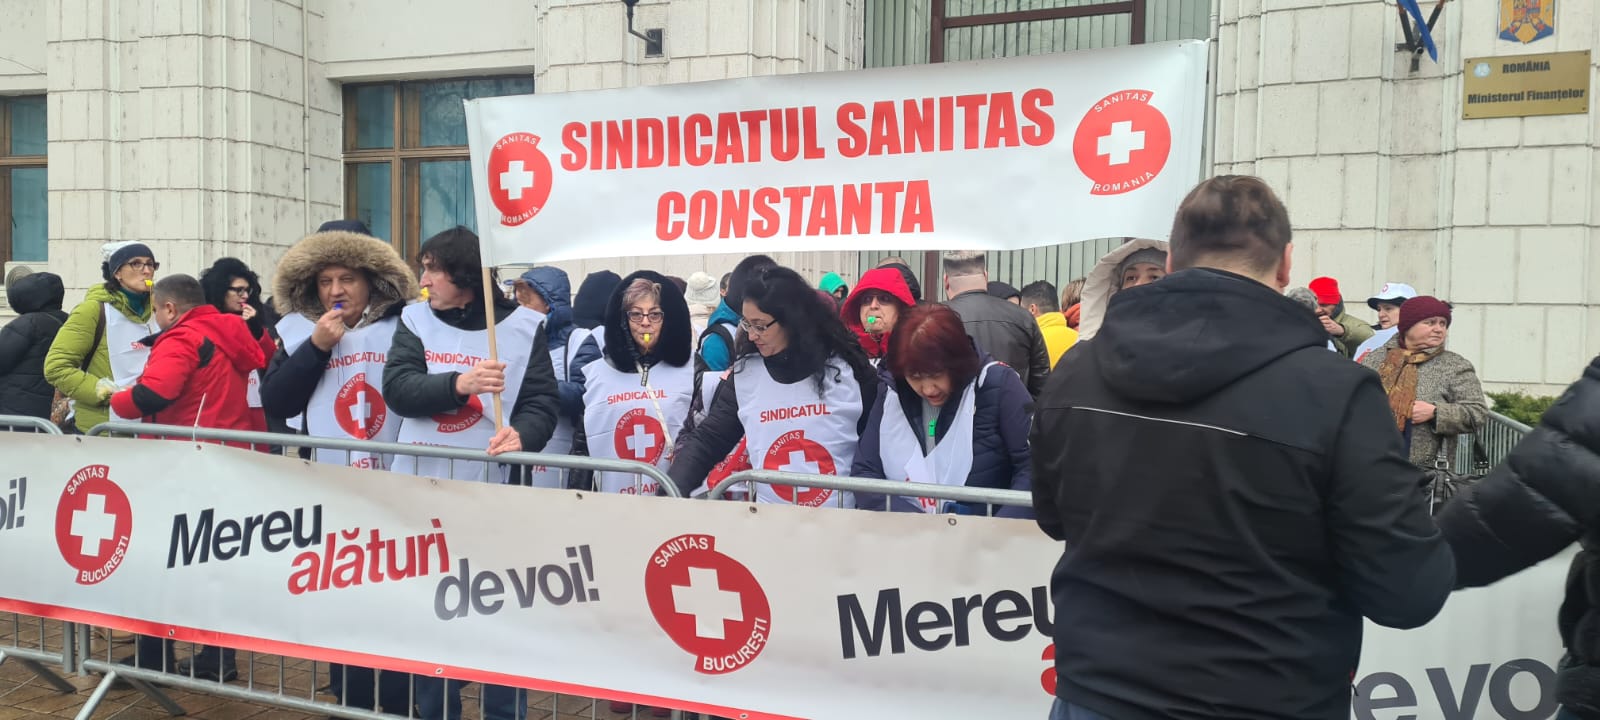 SANITAS protestează în fața Ministerului Finanțelor 